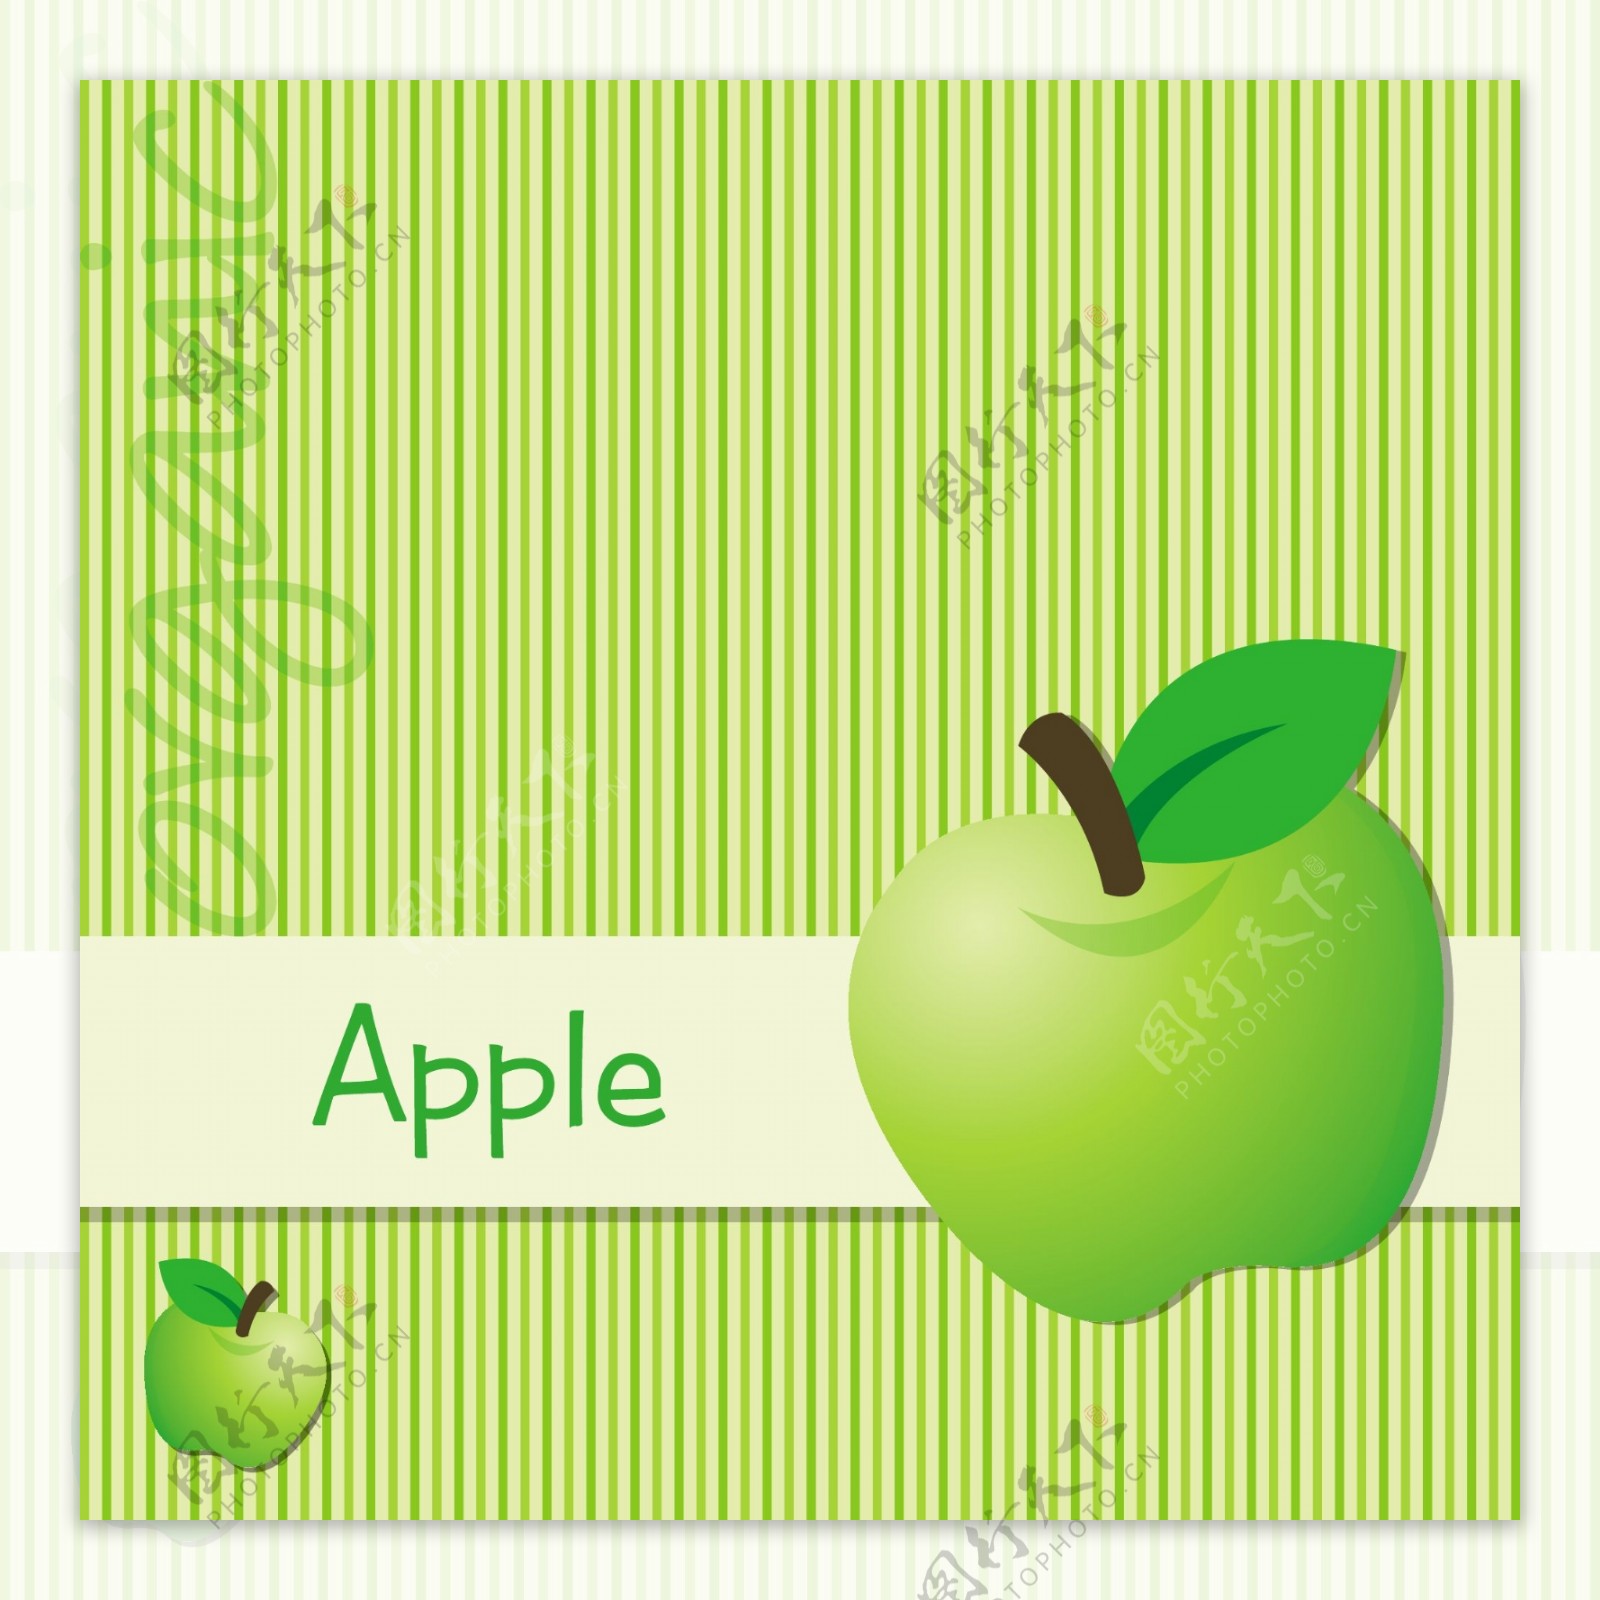 明亮的绿色有机苹果卡在矢量格式